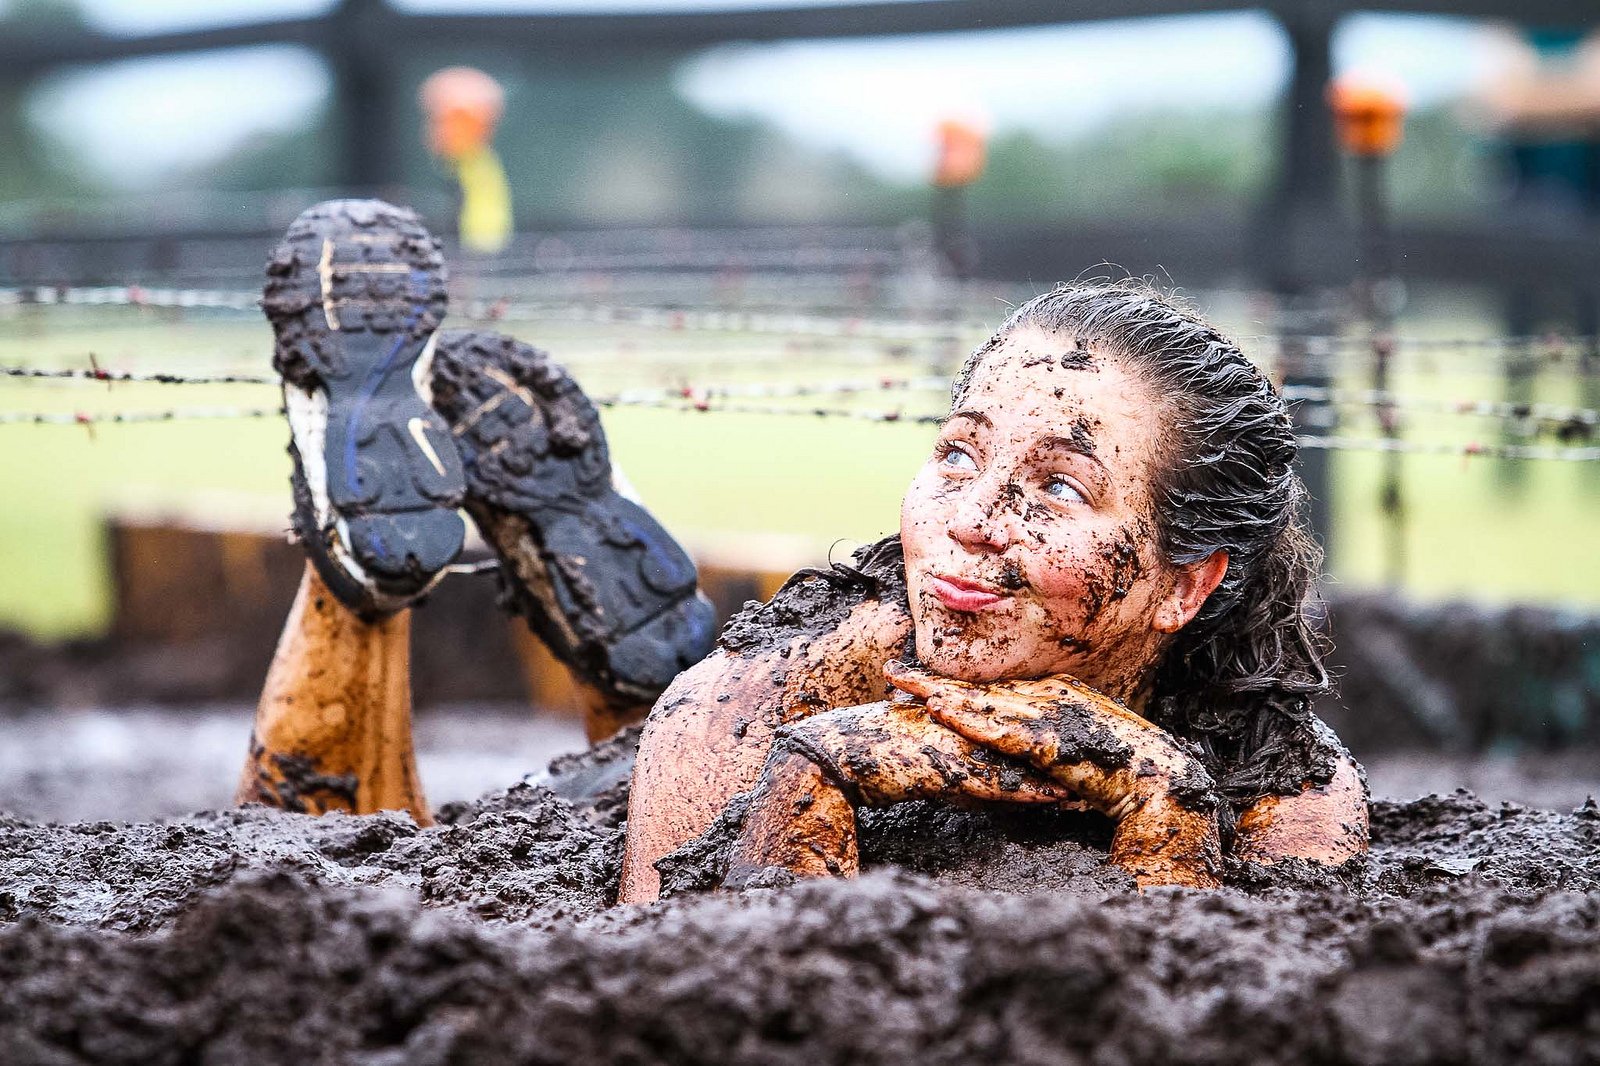 Women mud